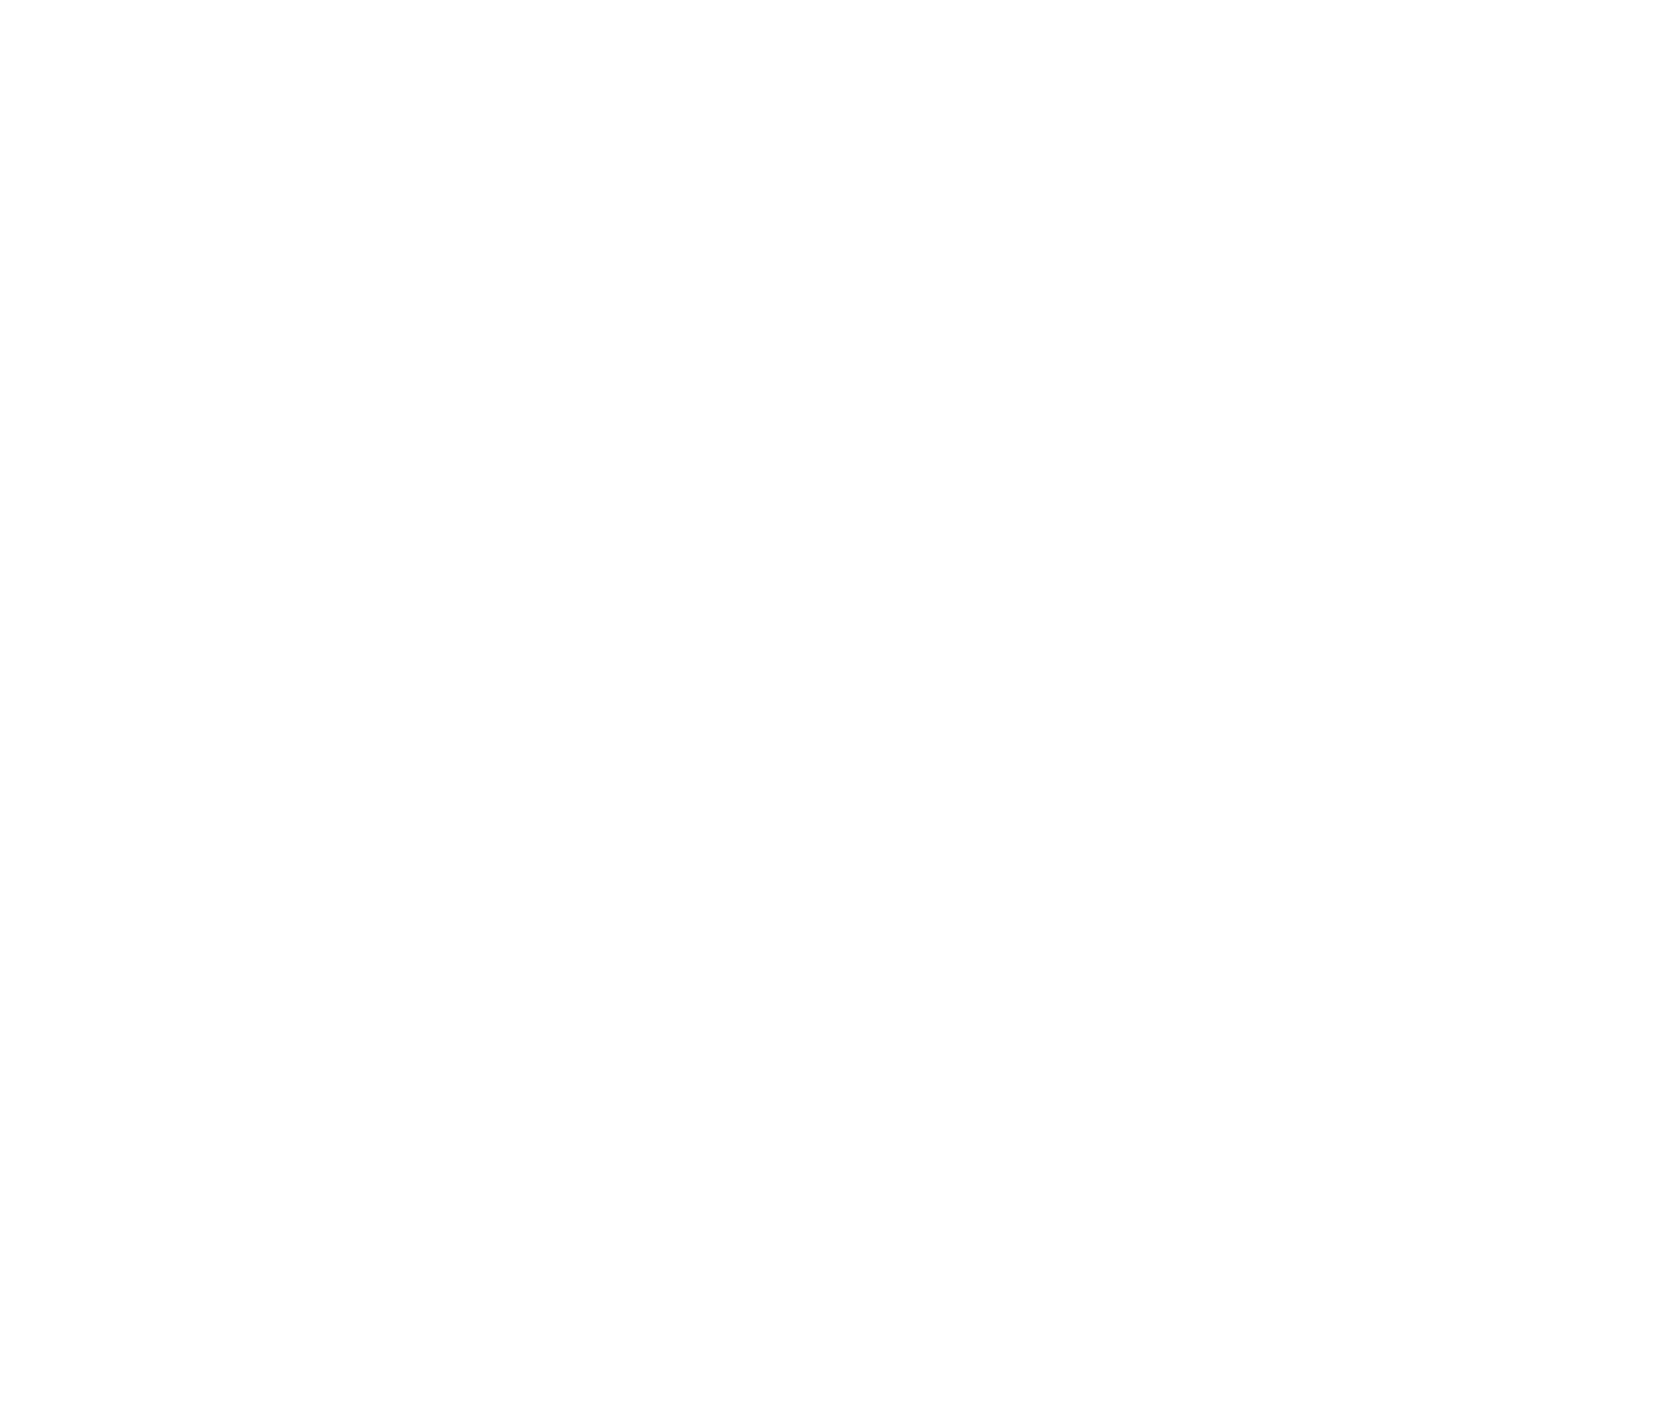 Фото Логотип ресторана Voice Collection Самара, объемные буквы с контражурной подсветкой, крепление на дистанционные держатели.